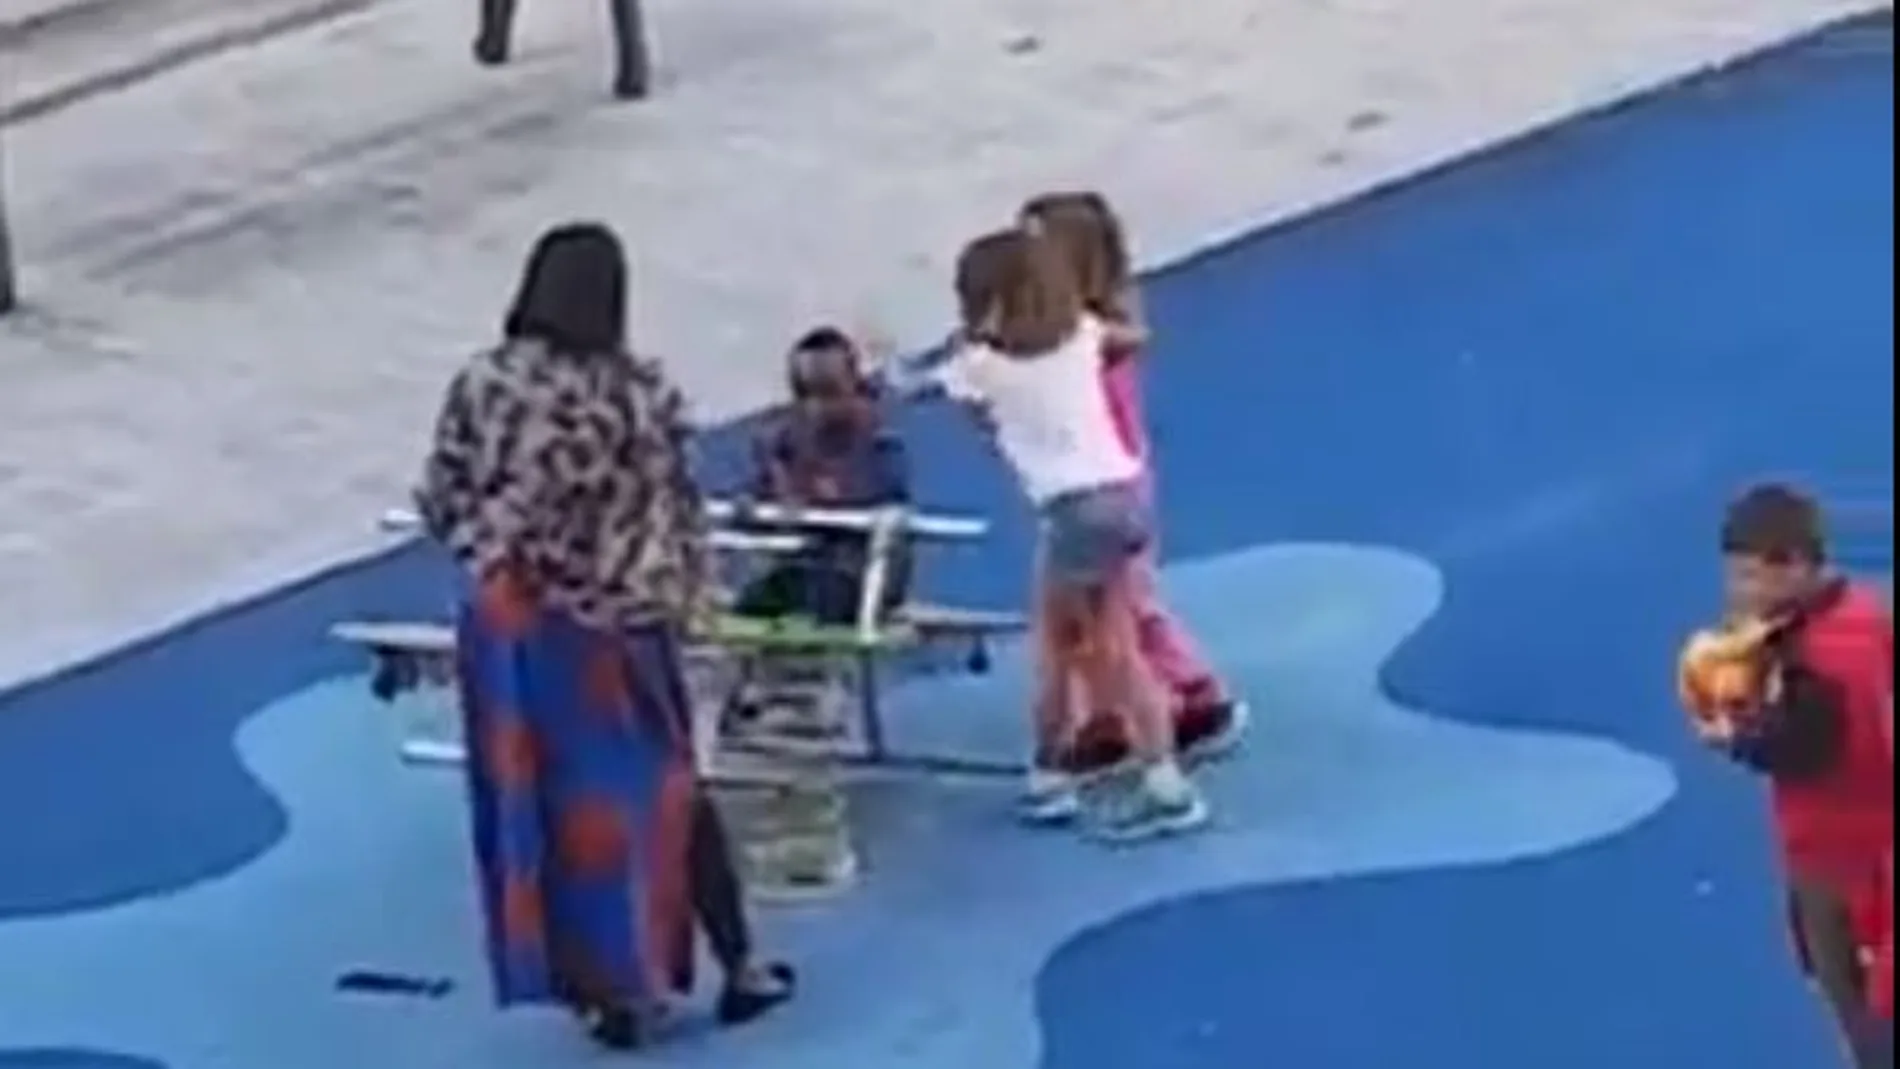 Momento en el que dos niñas se acercan al niño negro y le golpean en la cabeza